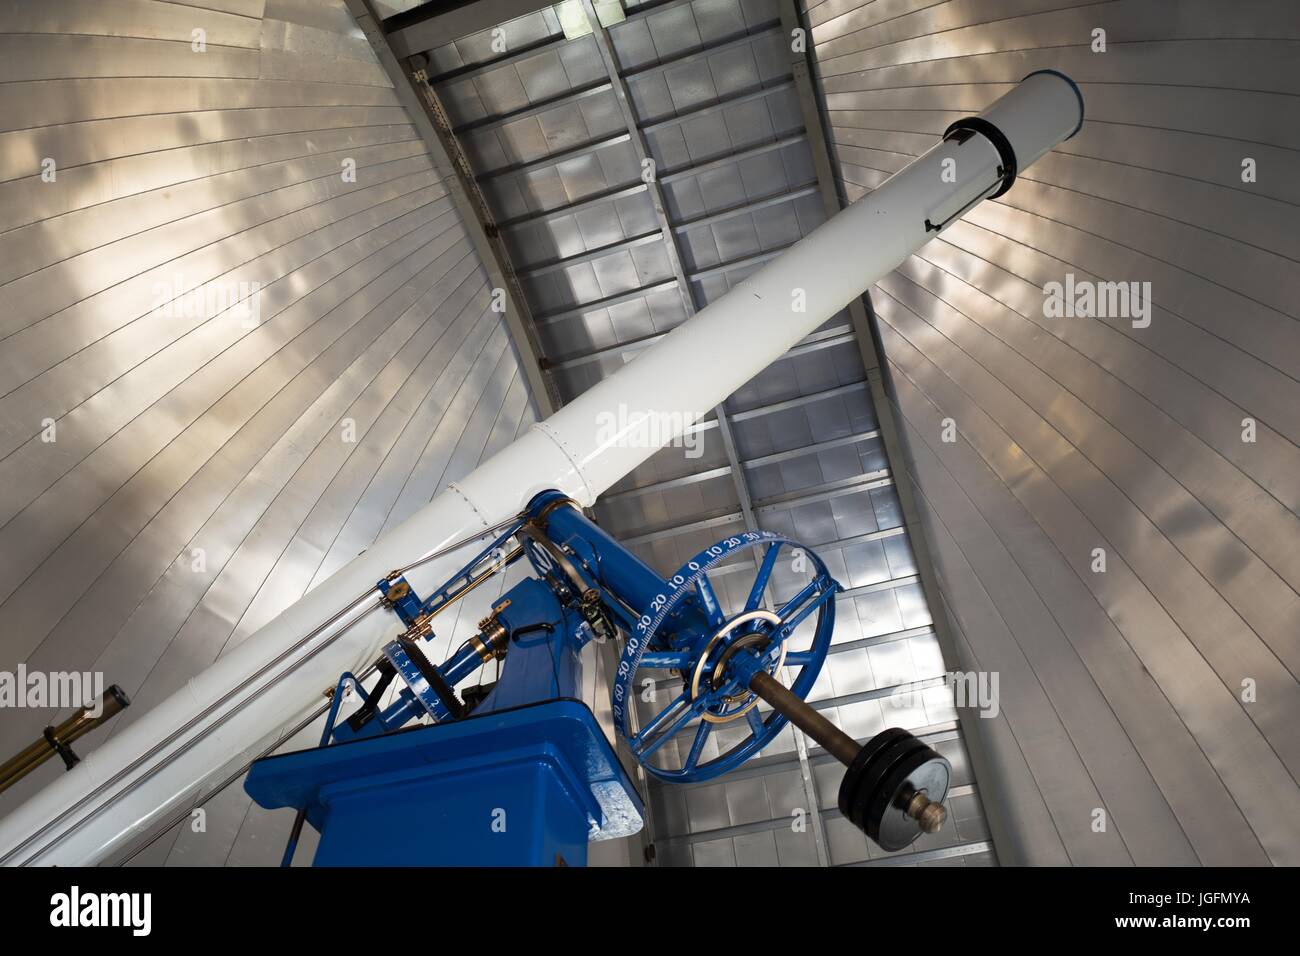 20-Zoll-Durchmesser Refracting Teleskop von Warner und Swasey, genannt Rachel, ursprünglich am Chabot-Observatorium in 1914 installiert und verwendet jetzt das Chabot Space Science Center, ein Wissenschaftsmuseum und Observatorium in Oakland, Kalifornien, 15. Juni 2017. Stockfoto